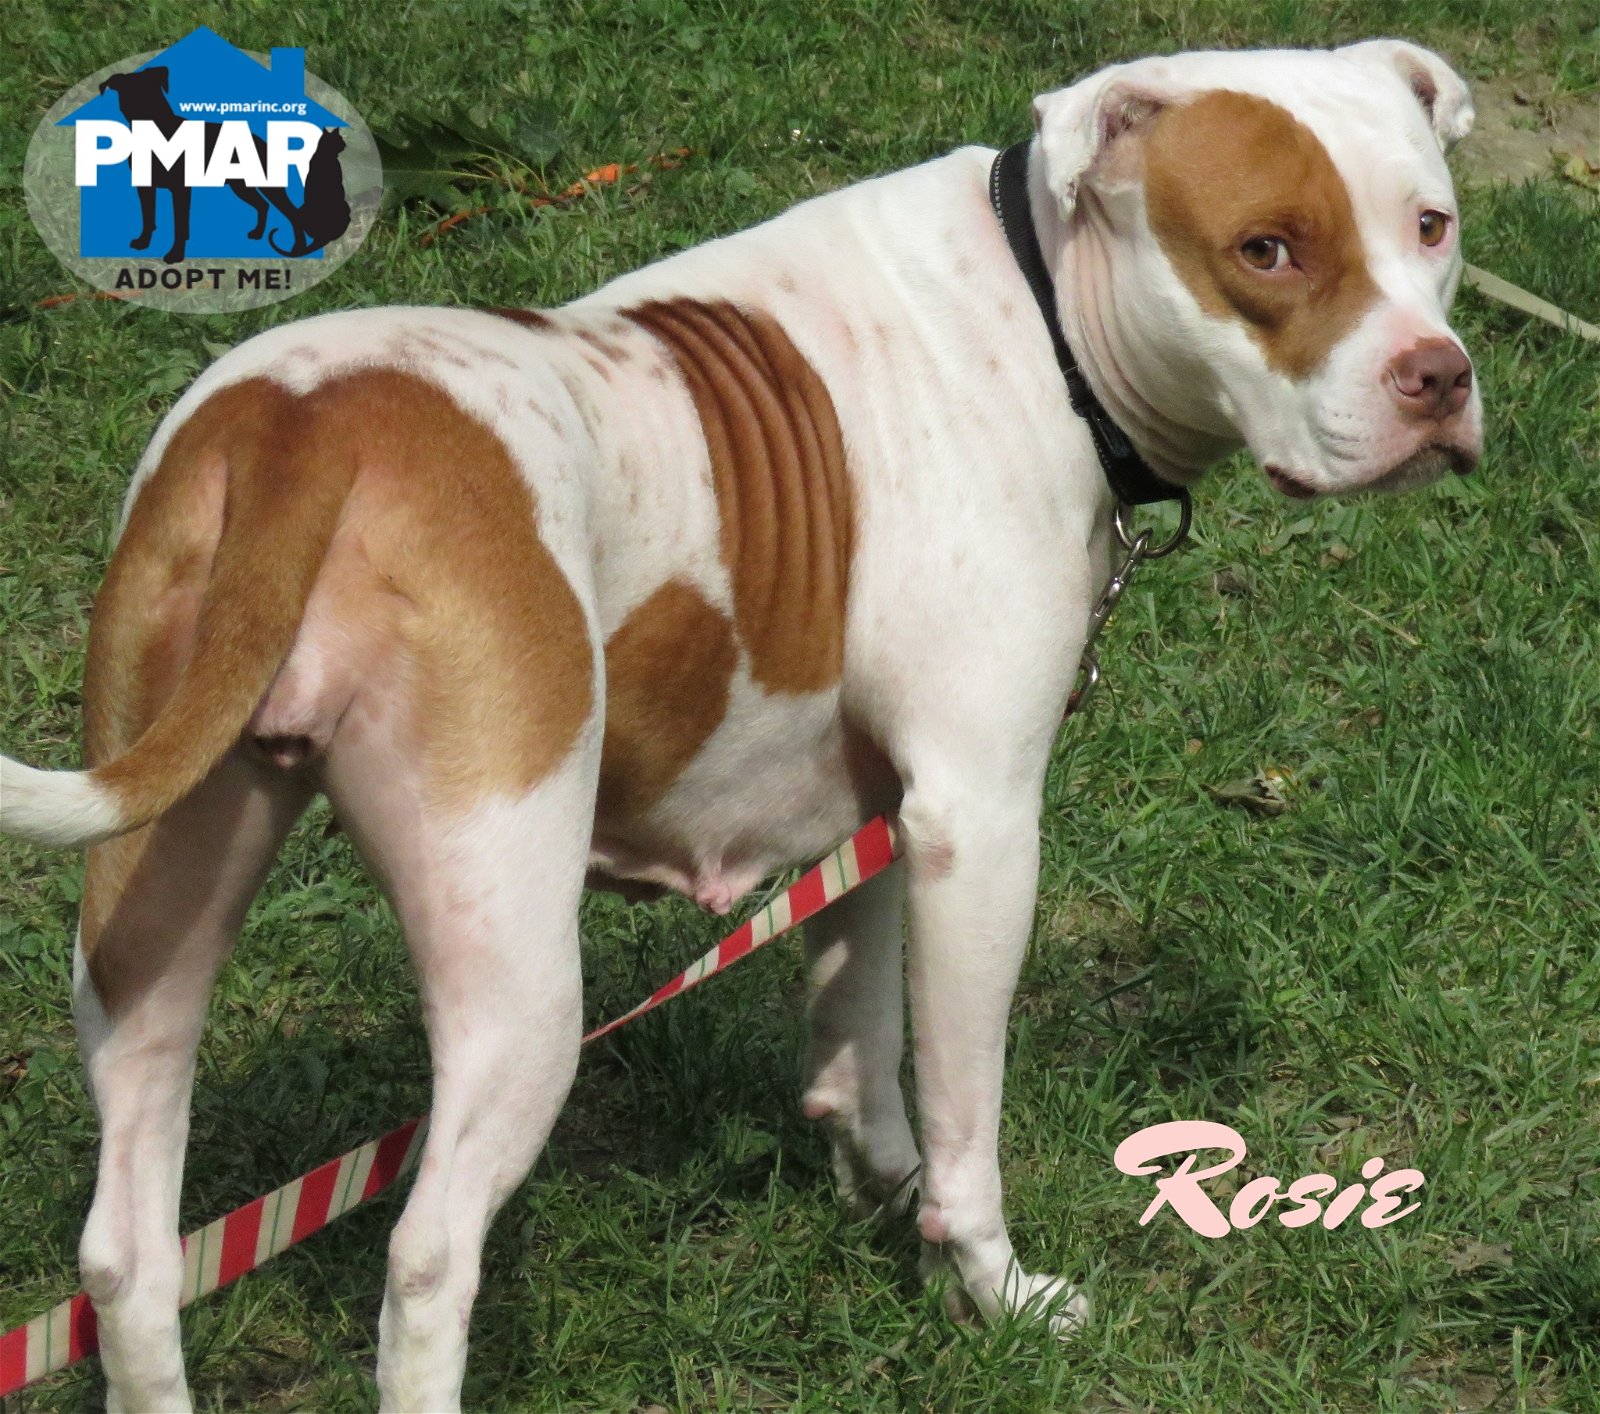 adoptable Dog in Binghamton, NY named Rosie